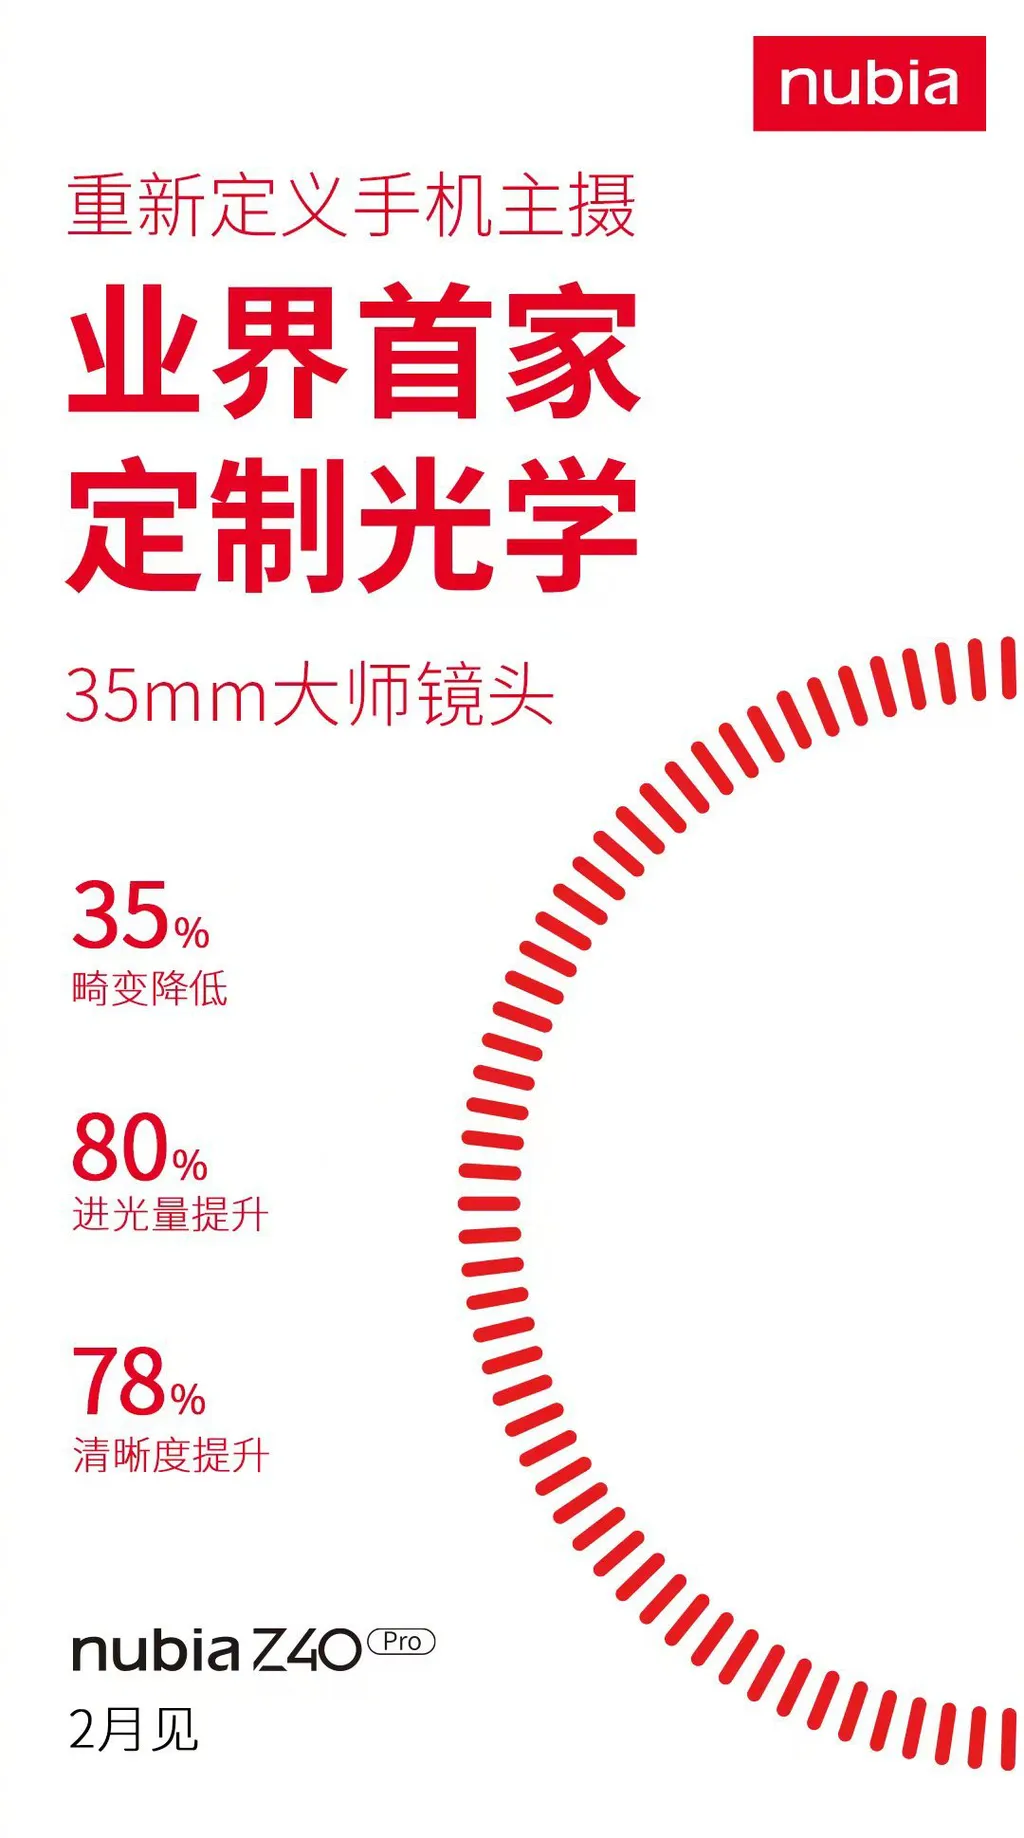 Distorção das câmeras deverá ser reduzida em até 35%, de acordo com a marca (Imagem: Weibo)